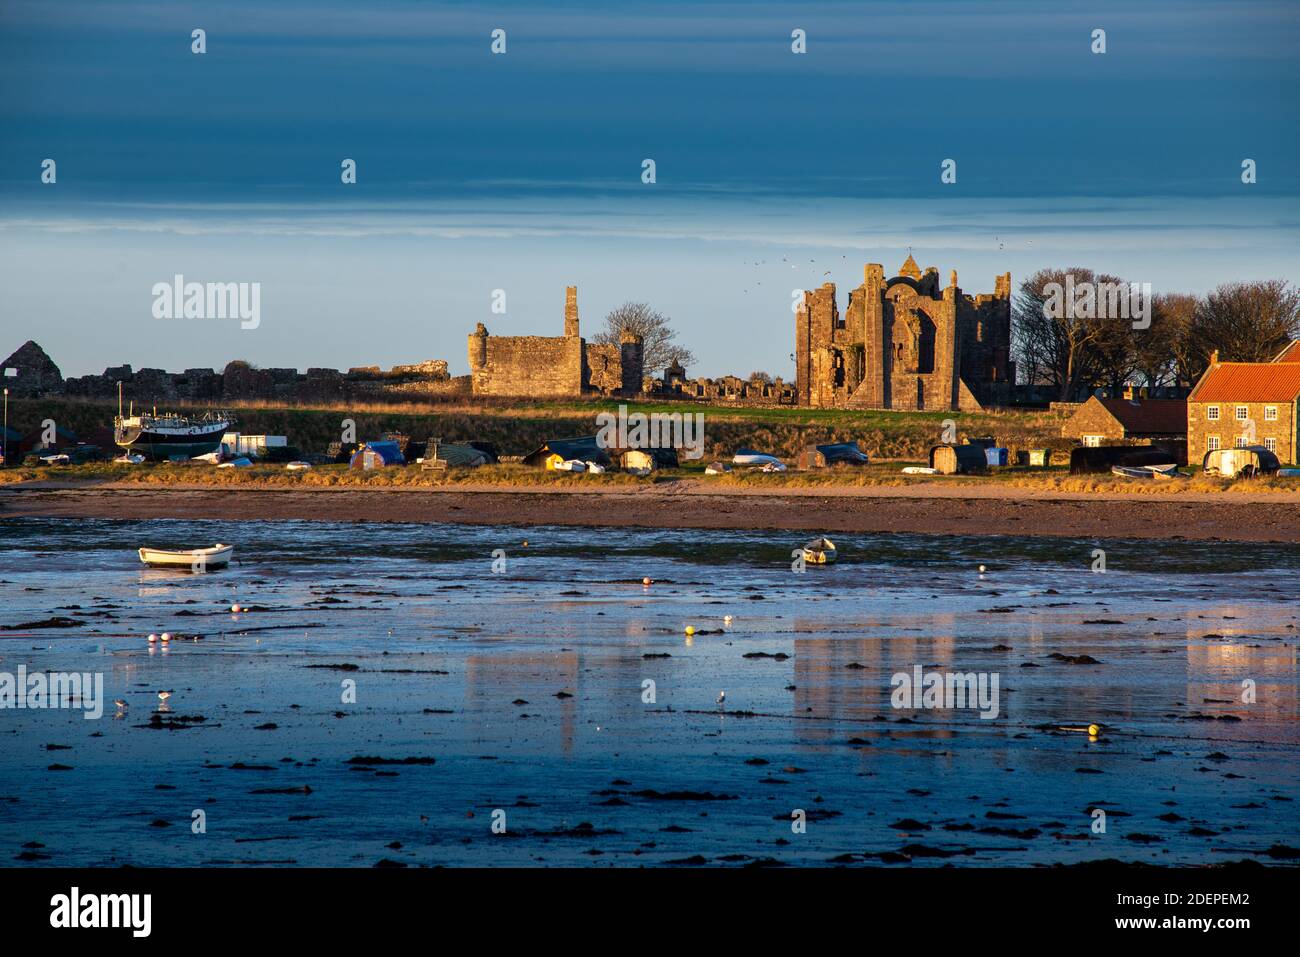 Les ruines du Prieuré de Lindisfarne sur l'île Sainte de Lindisfarne au large de la côte nord de Northumberland célèbre pour ses association avec Saint Cuthbert Banque D'Images